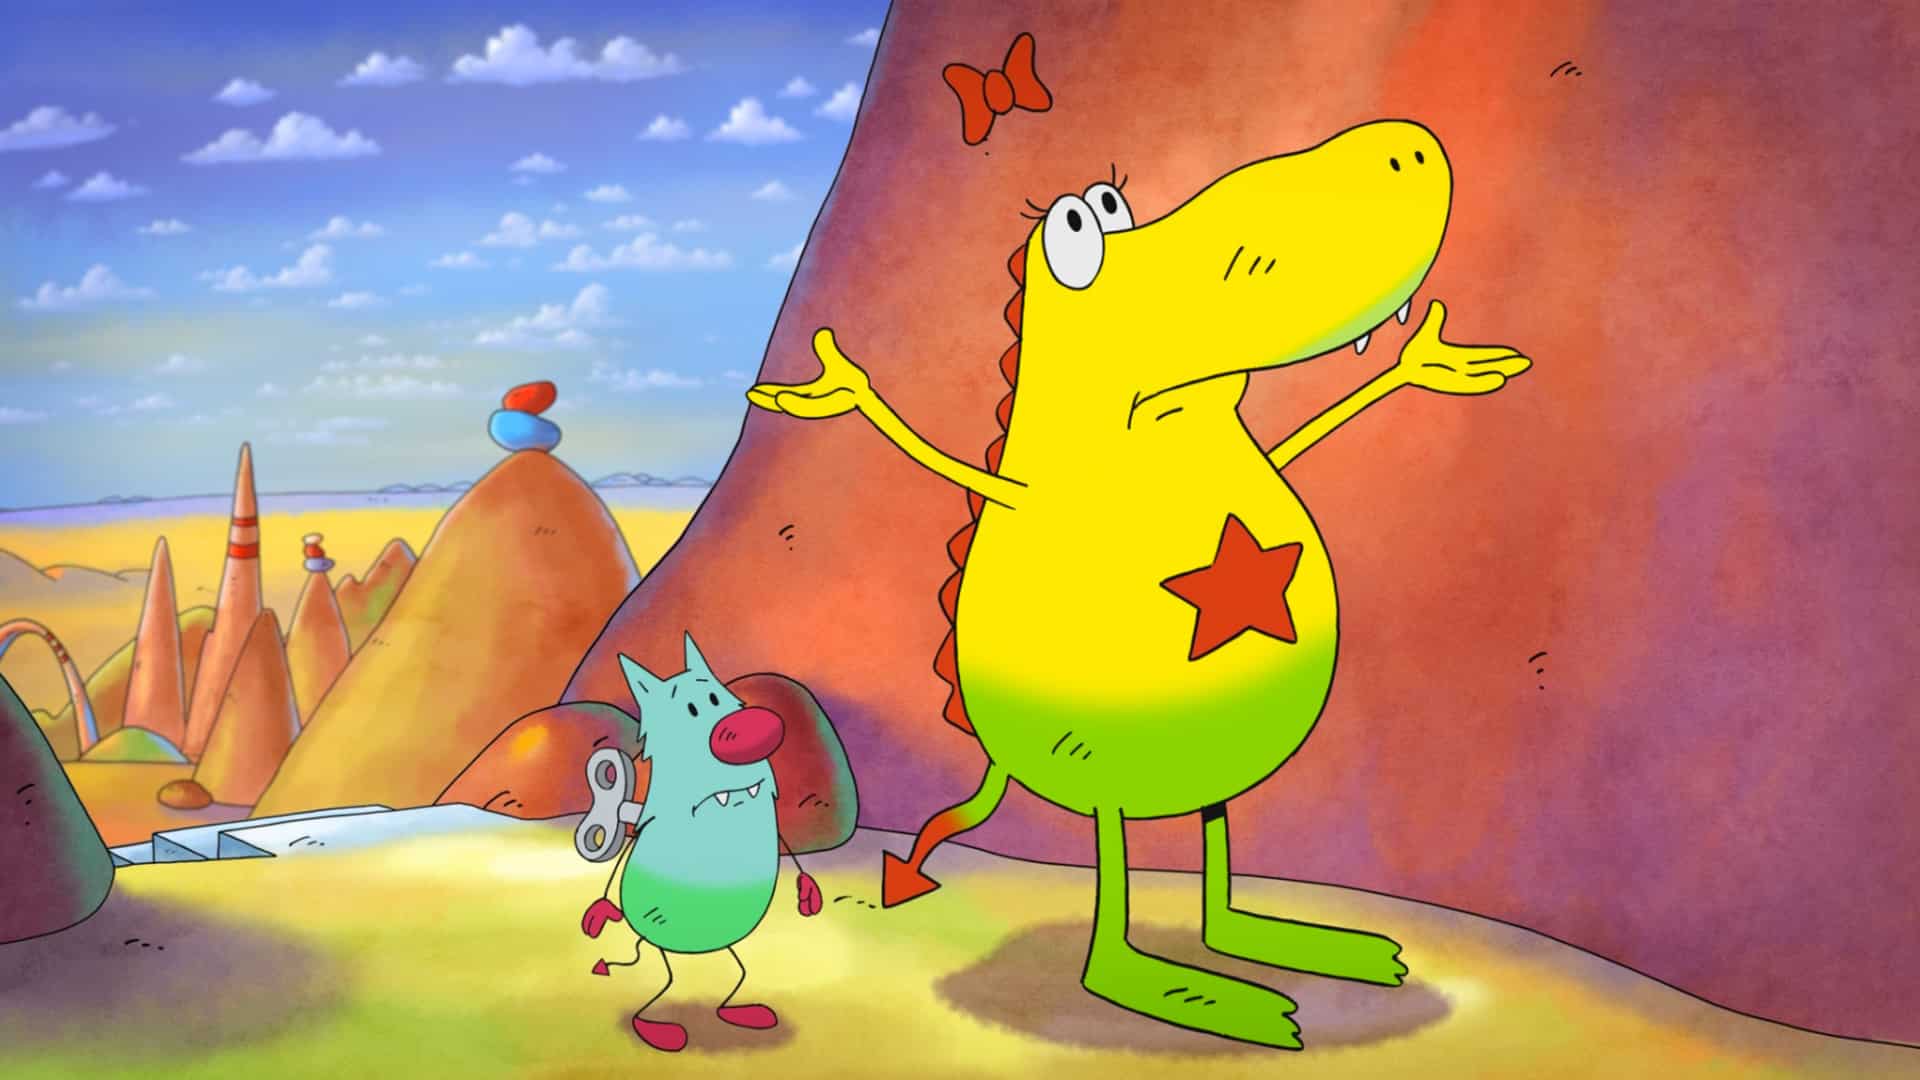 Recensione Molly Monster, il film di animazione a misura d'infanzia